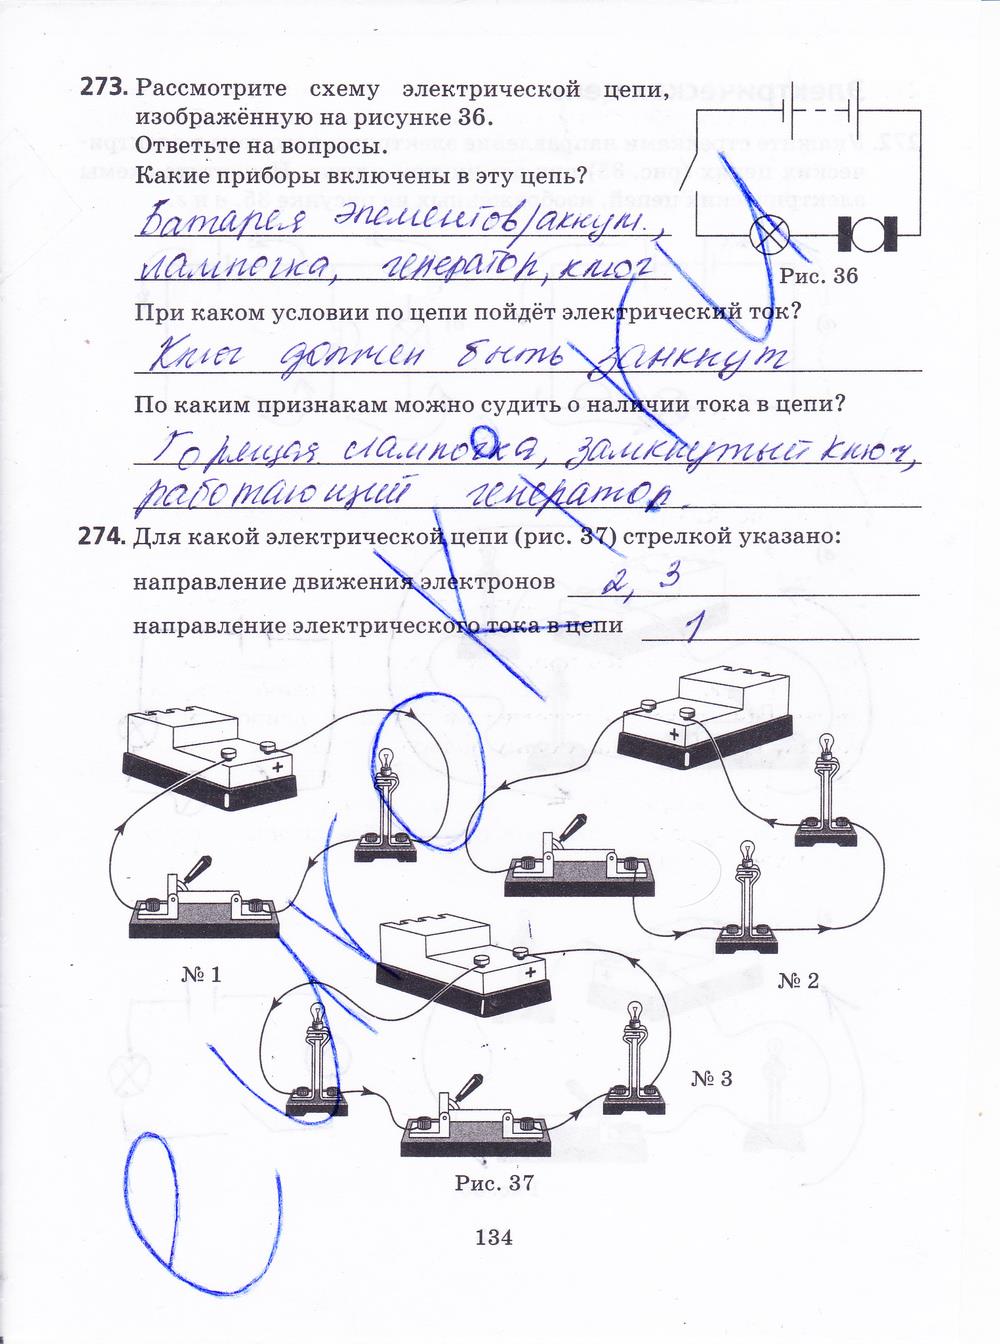 гдз 8 класс рабочая тетрадь страница 134 физика Пурышева, Важеевская